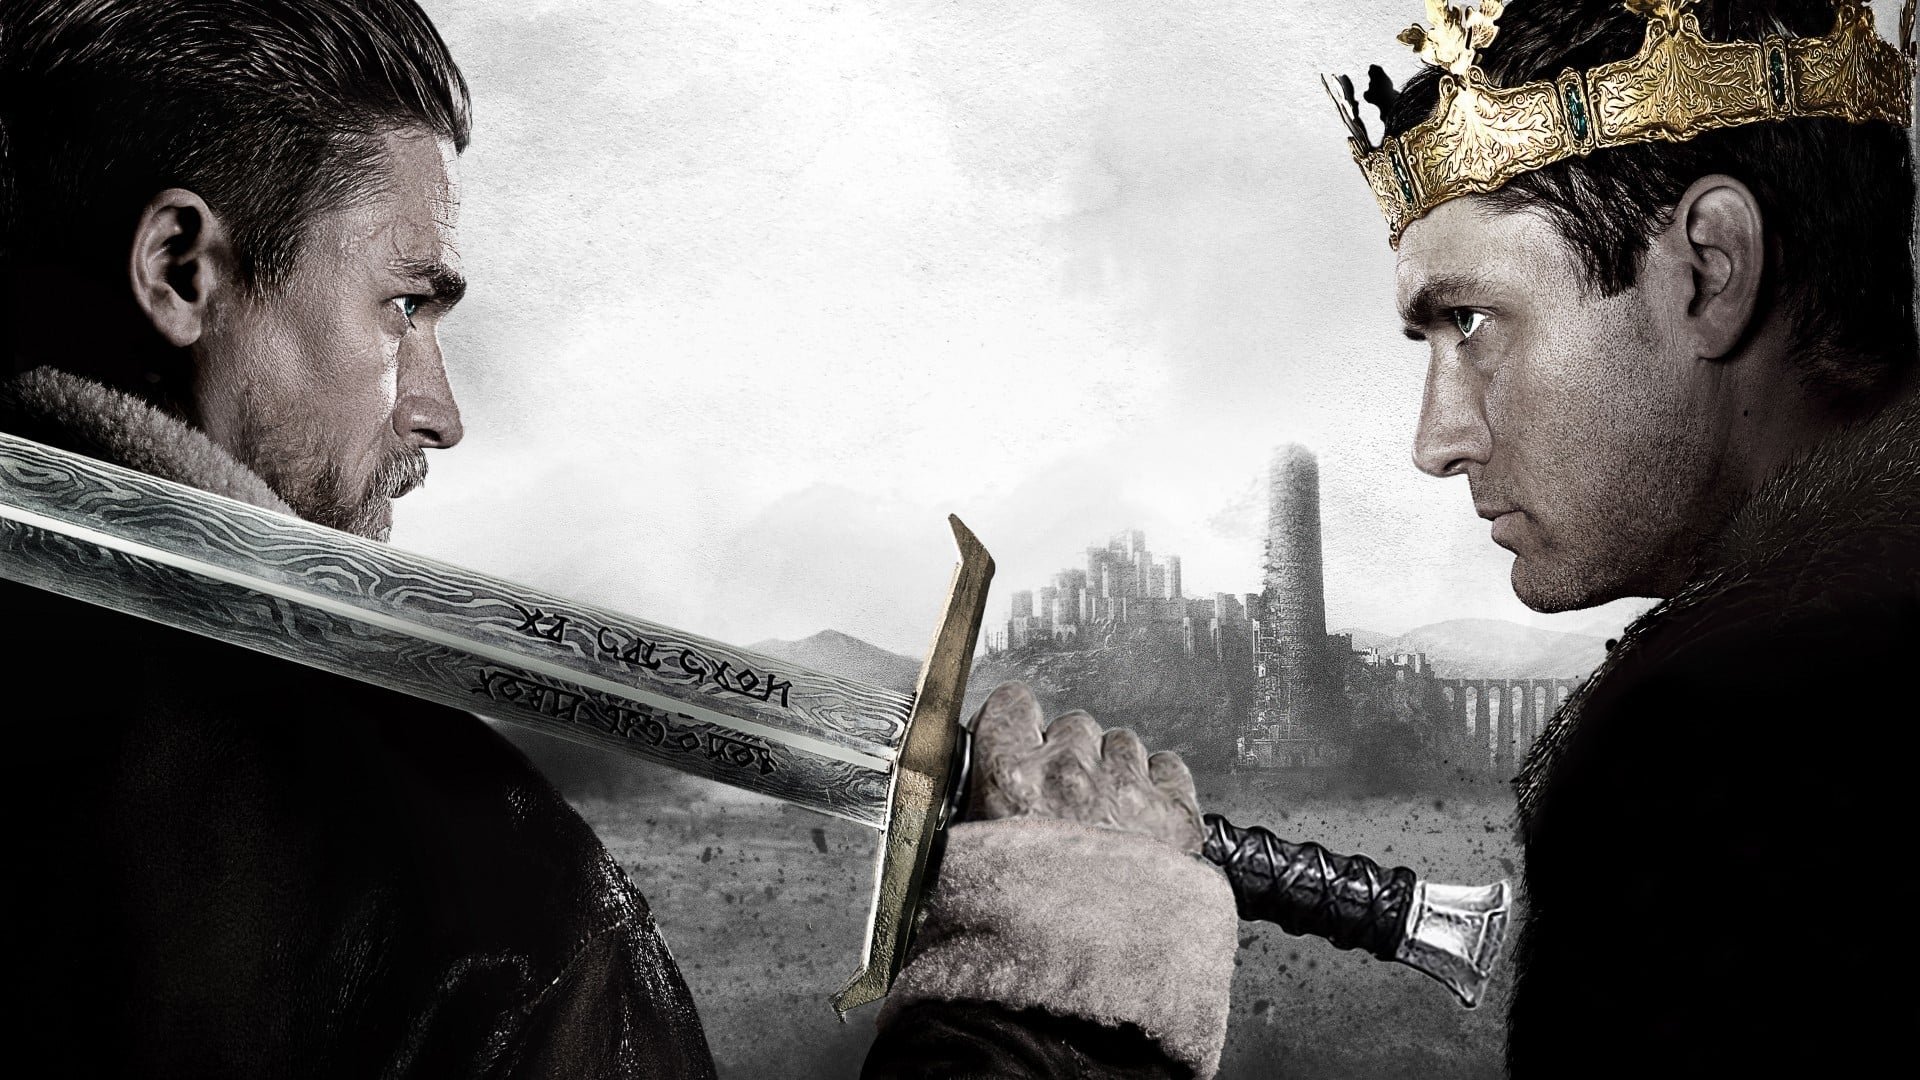 Xem Phim Huyền Thoại Vua Arthur: Thanh Gươm Trong Đá (King Arthur: Legend of the Sword)